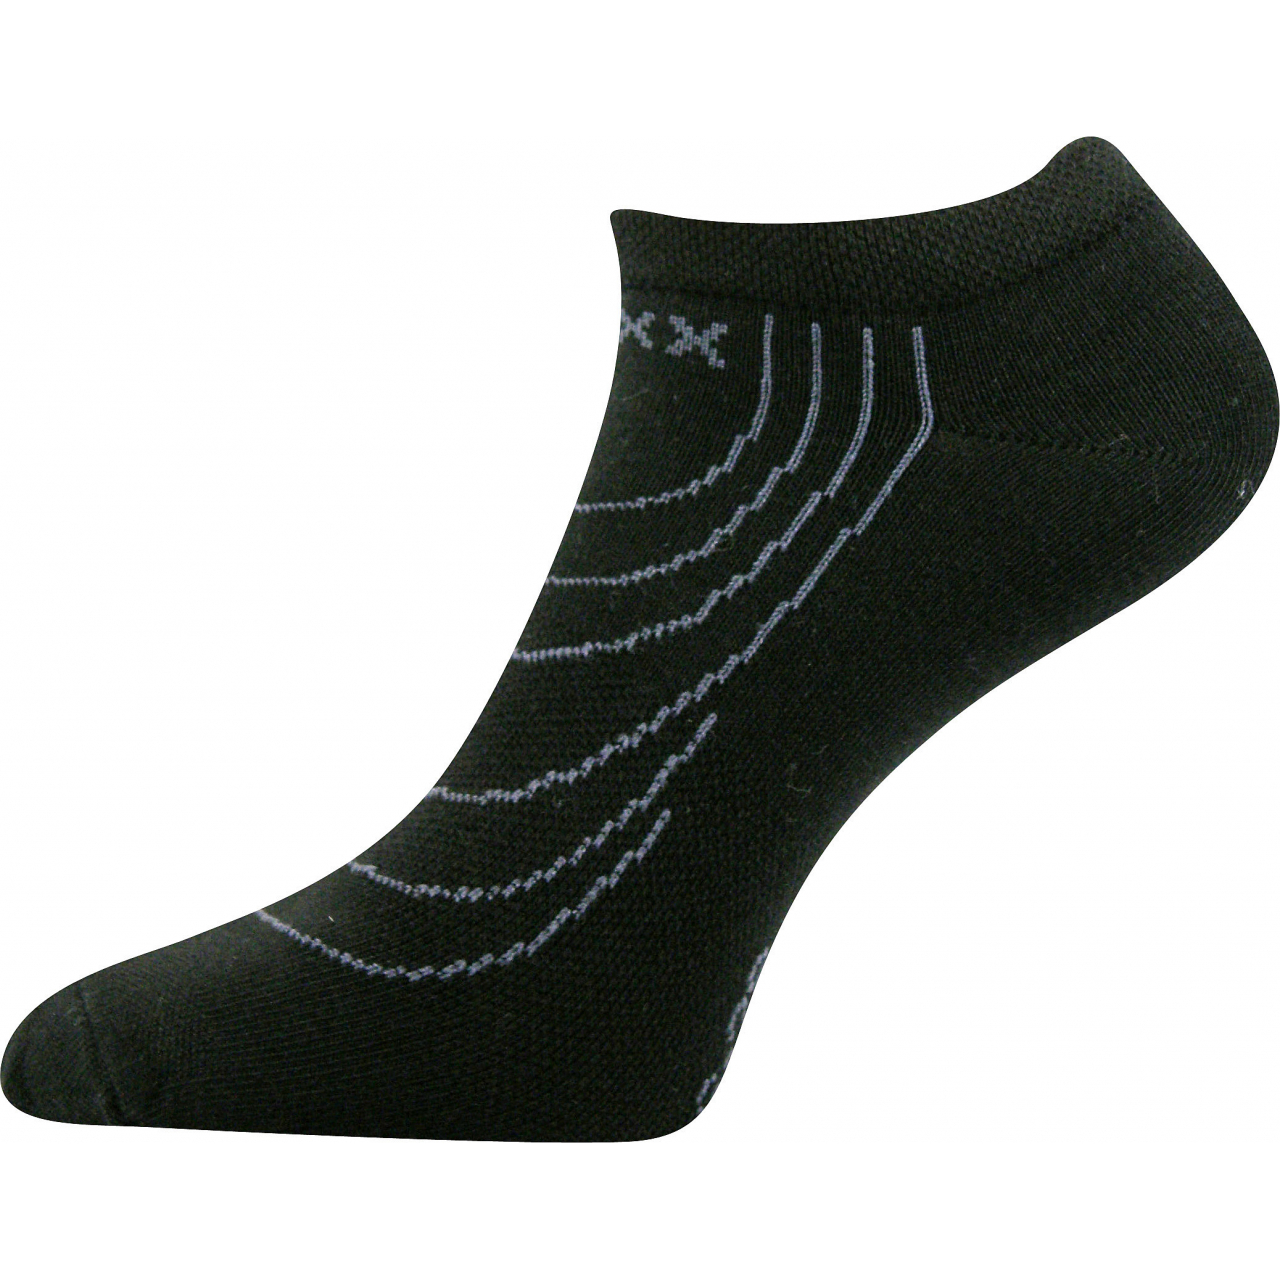 Ponožky nízké Voxx Rex - černé, 35-38